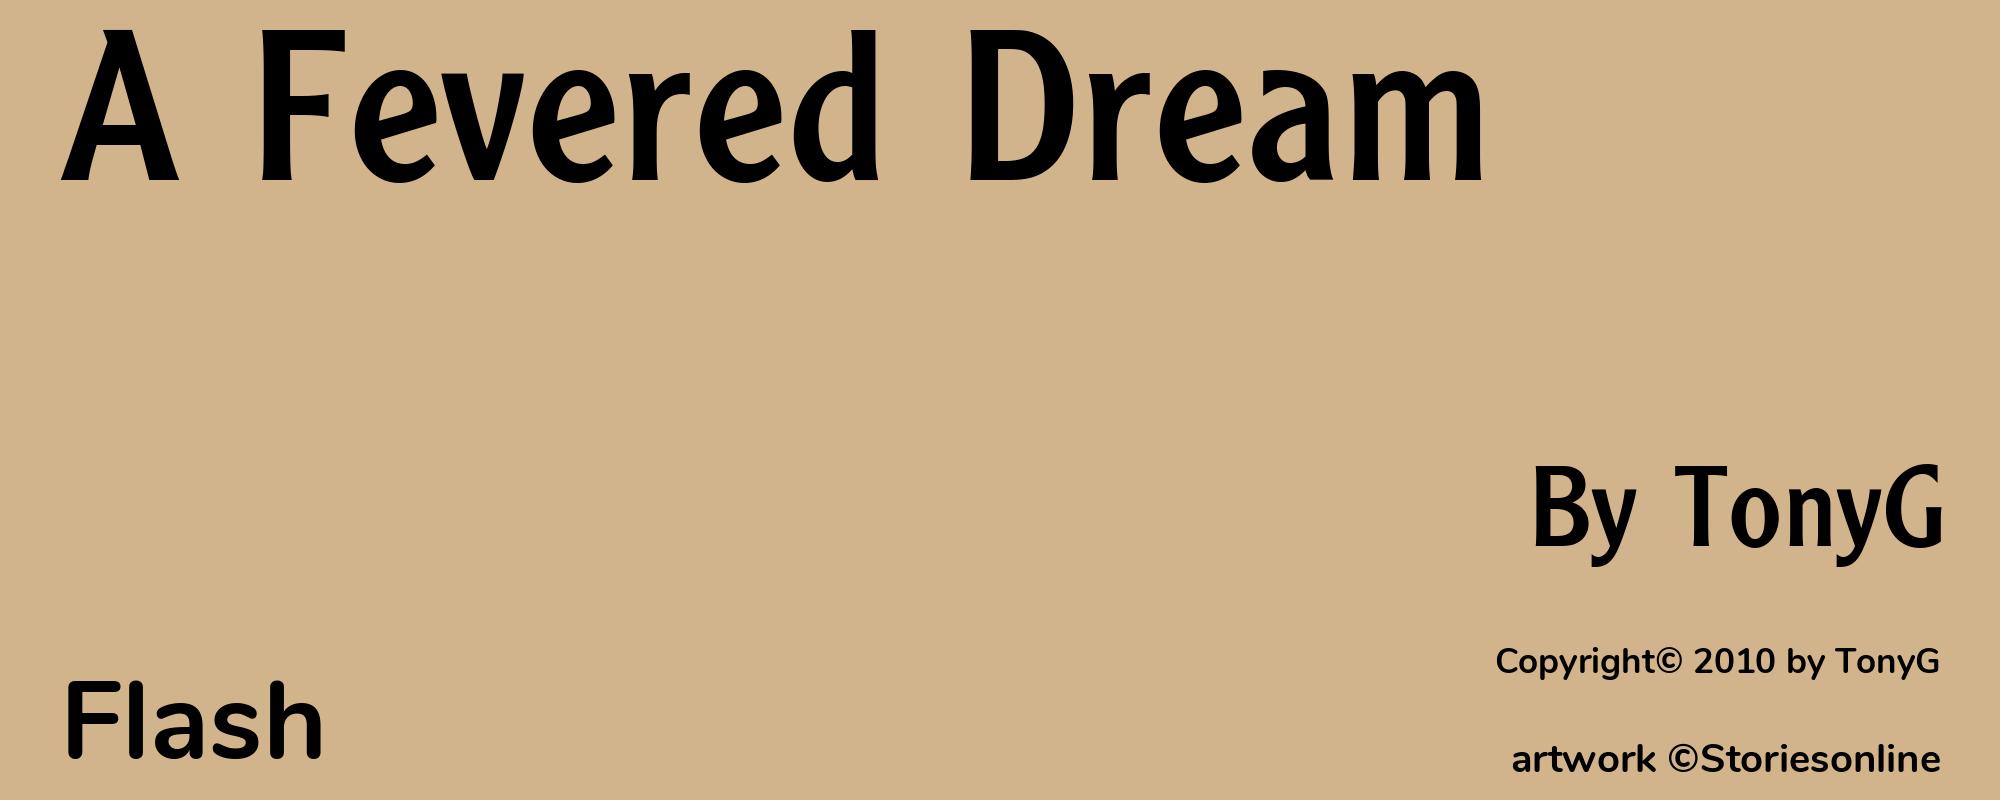 A Fevered Dream - Cover